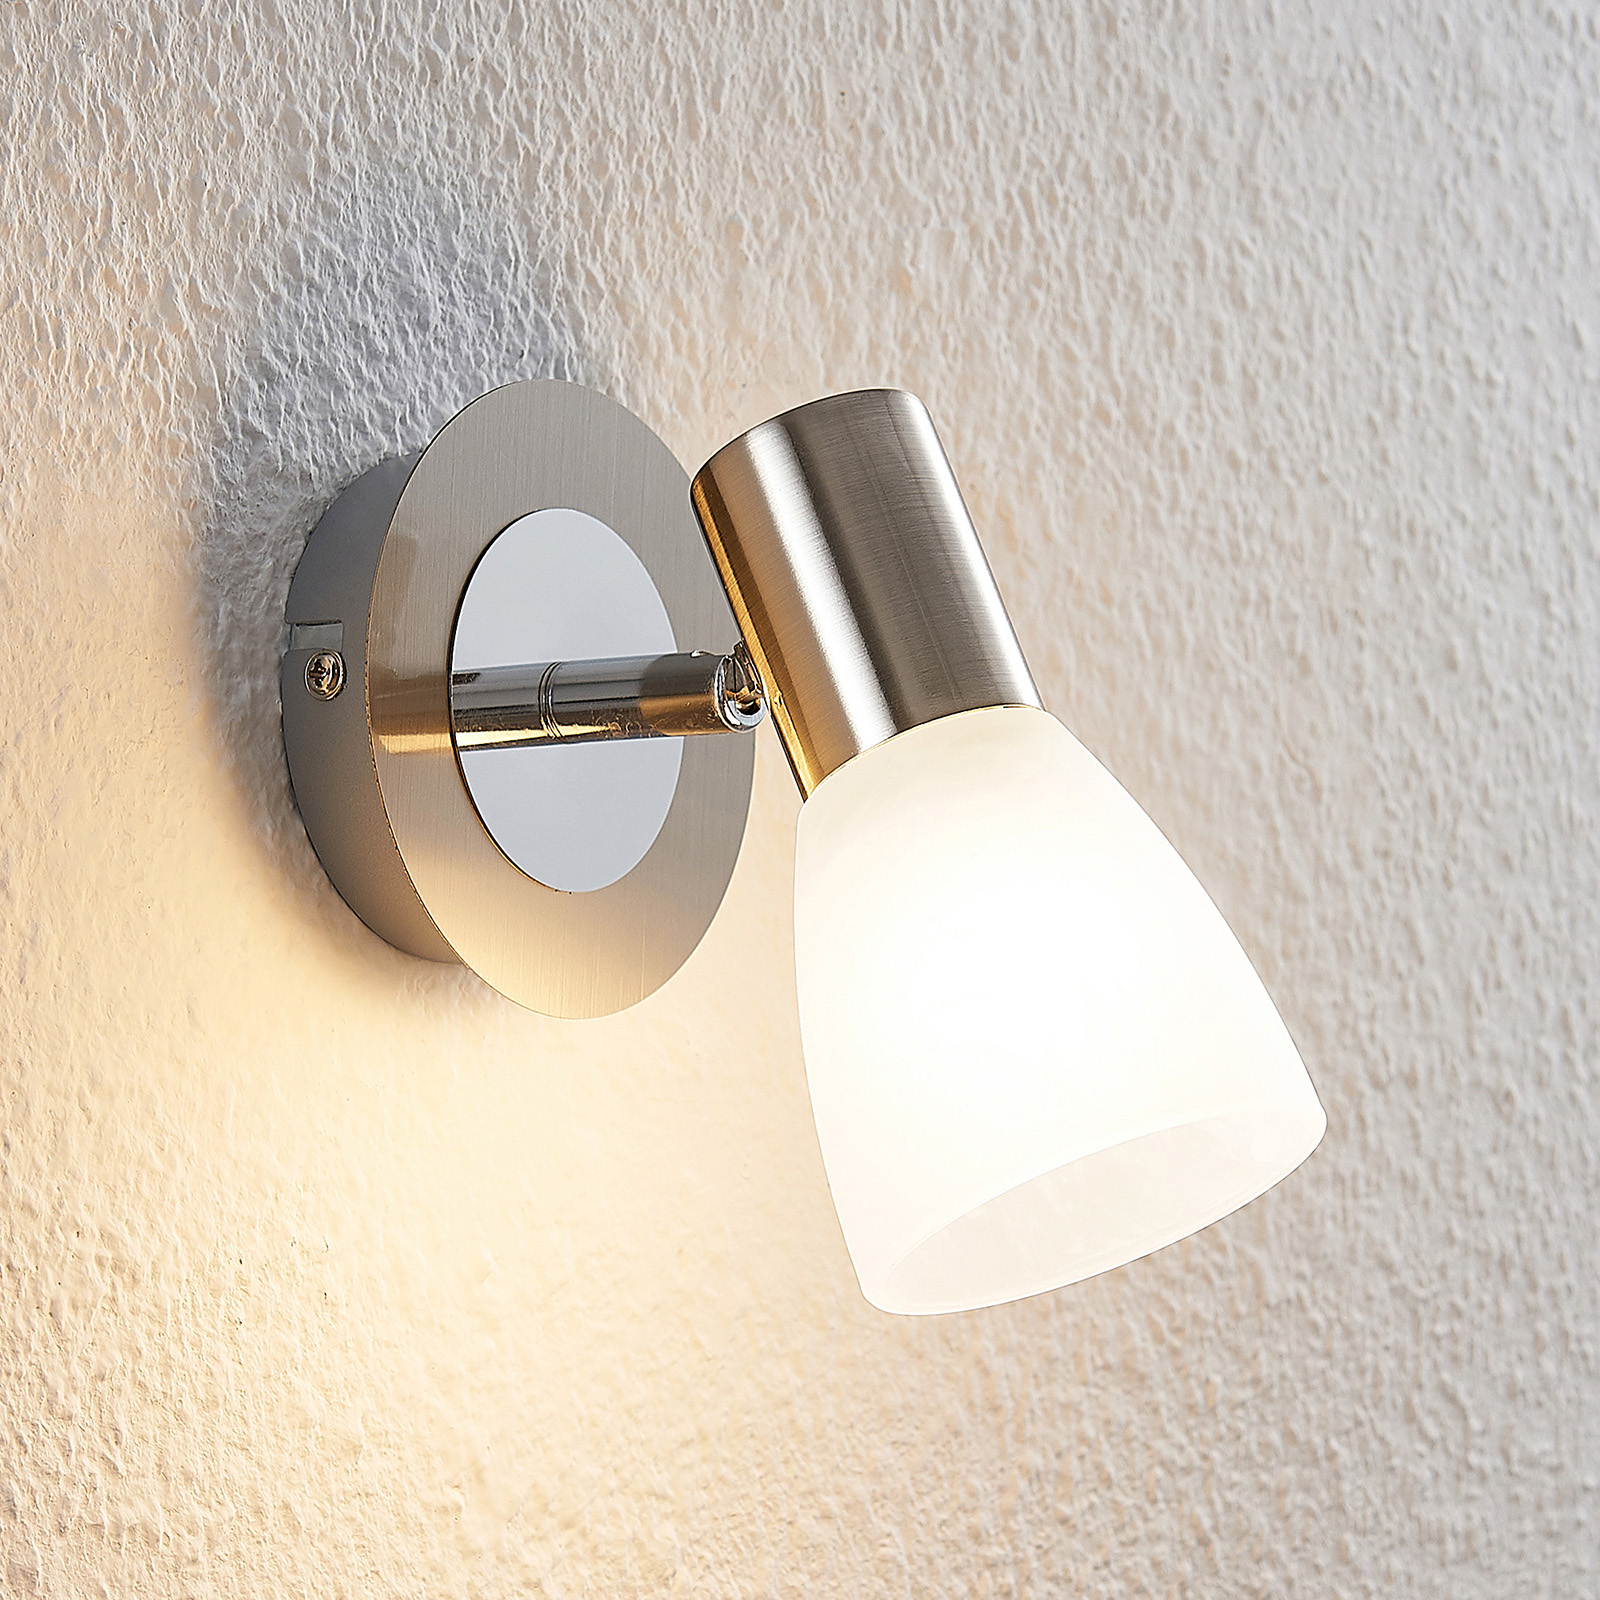 DEL Lampe Mur Salon Chambre Verre Spot Lampe Torche éclairage Interrupteur 